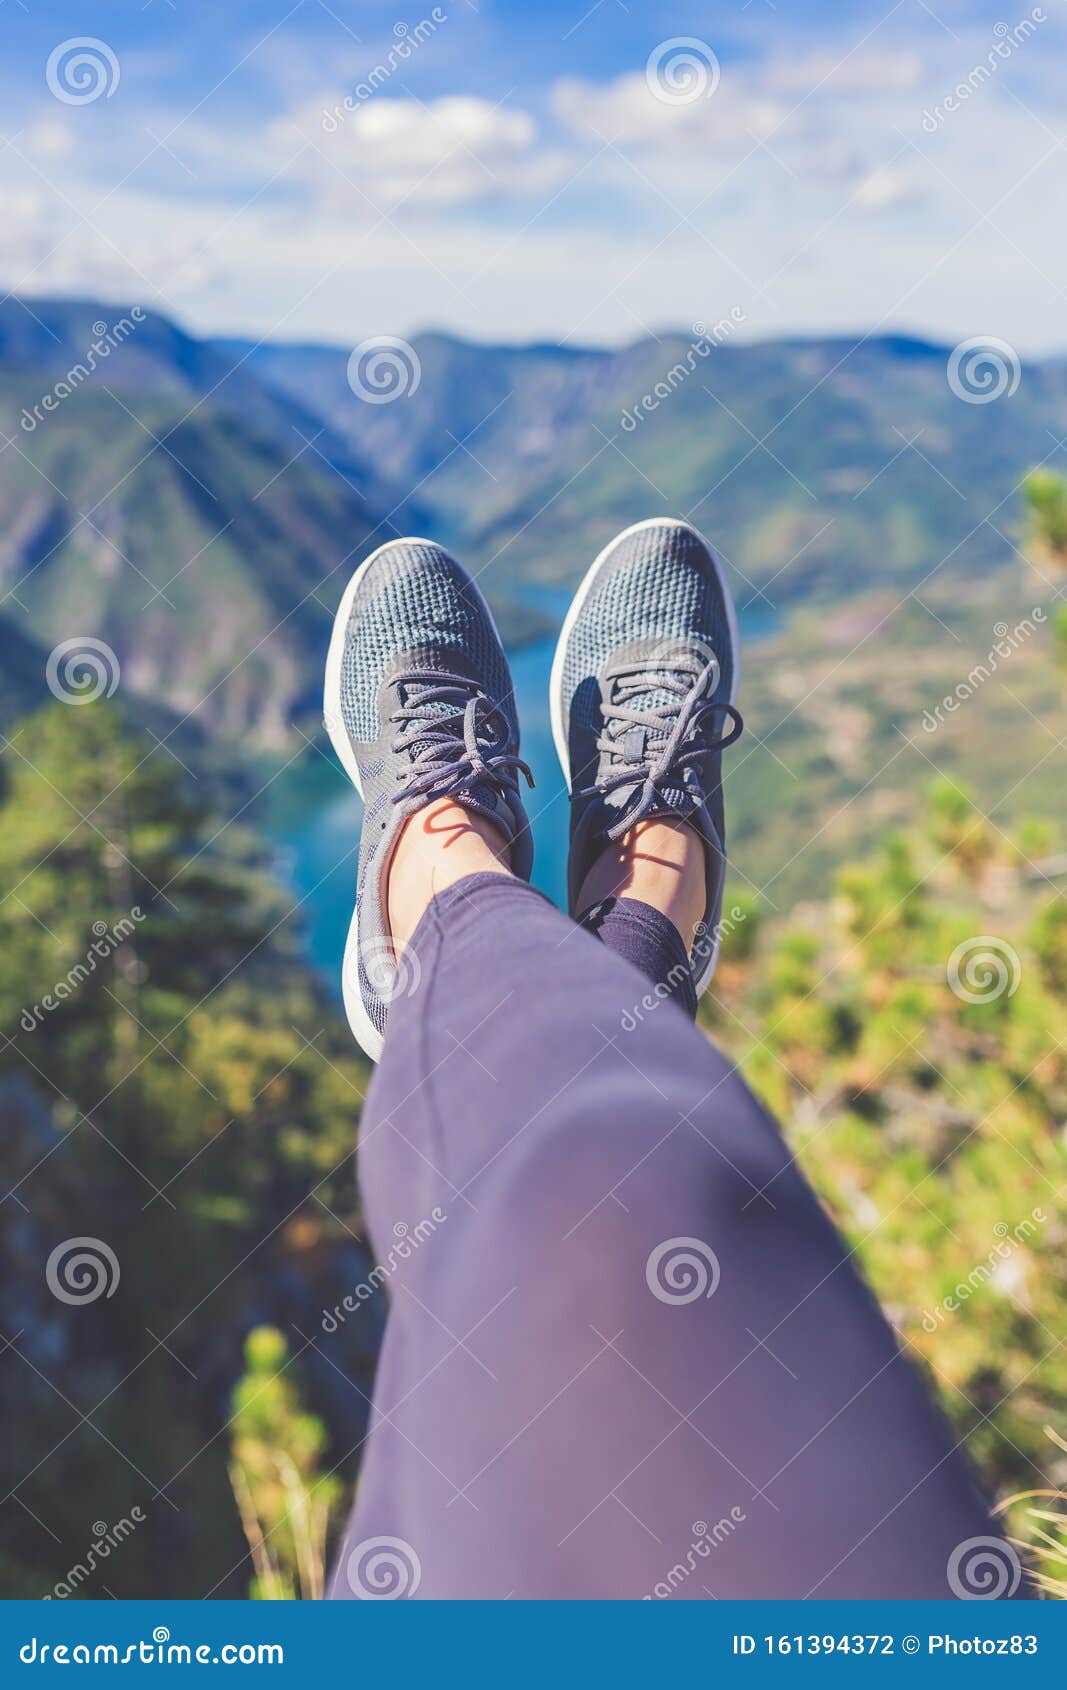 Patas De Mujer Excursionista Con Zapatos Deportivos Contra Hermosos Valle Y Colinas En El Fondo. Conceptos De Estilo De Vida Y Na Foto de archivo Imagen escalada,